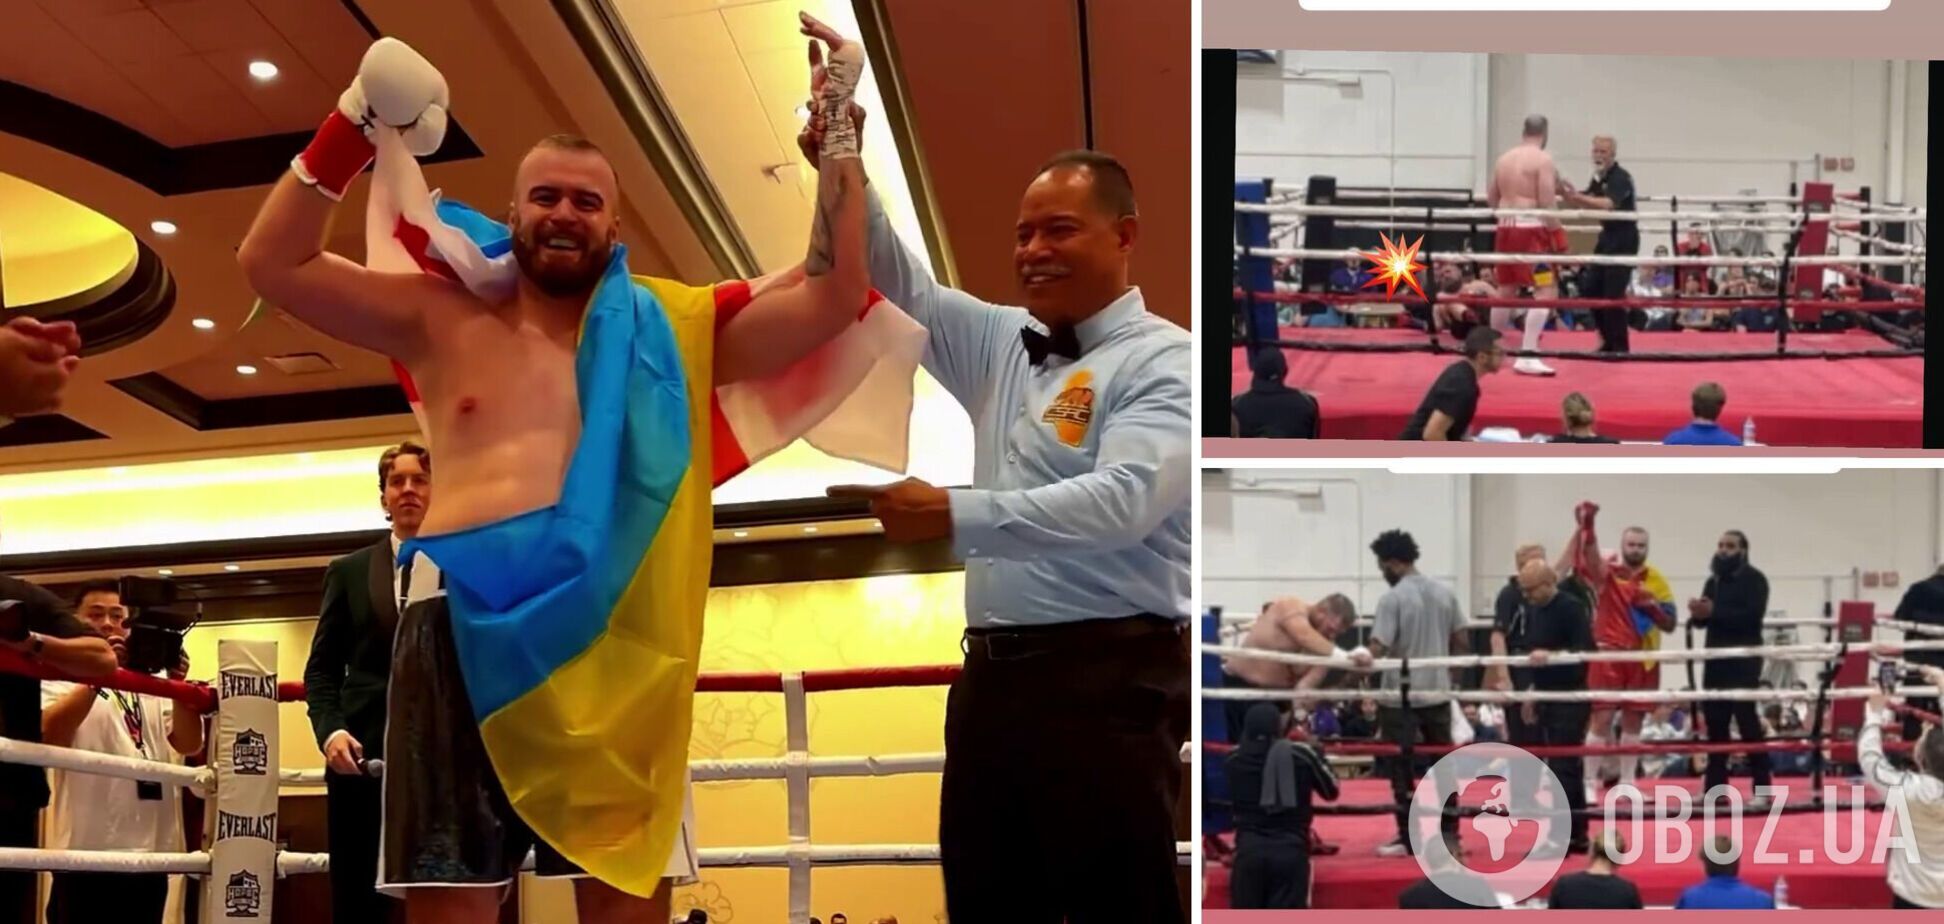 Непобедимый украинский супертяж выиграл брутальным нокаутом в 1-м раунде, повесив соперника на канаты. Видео